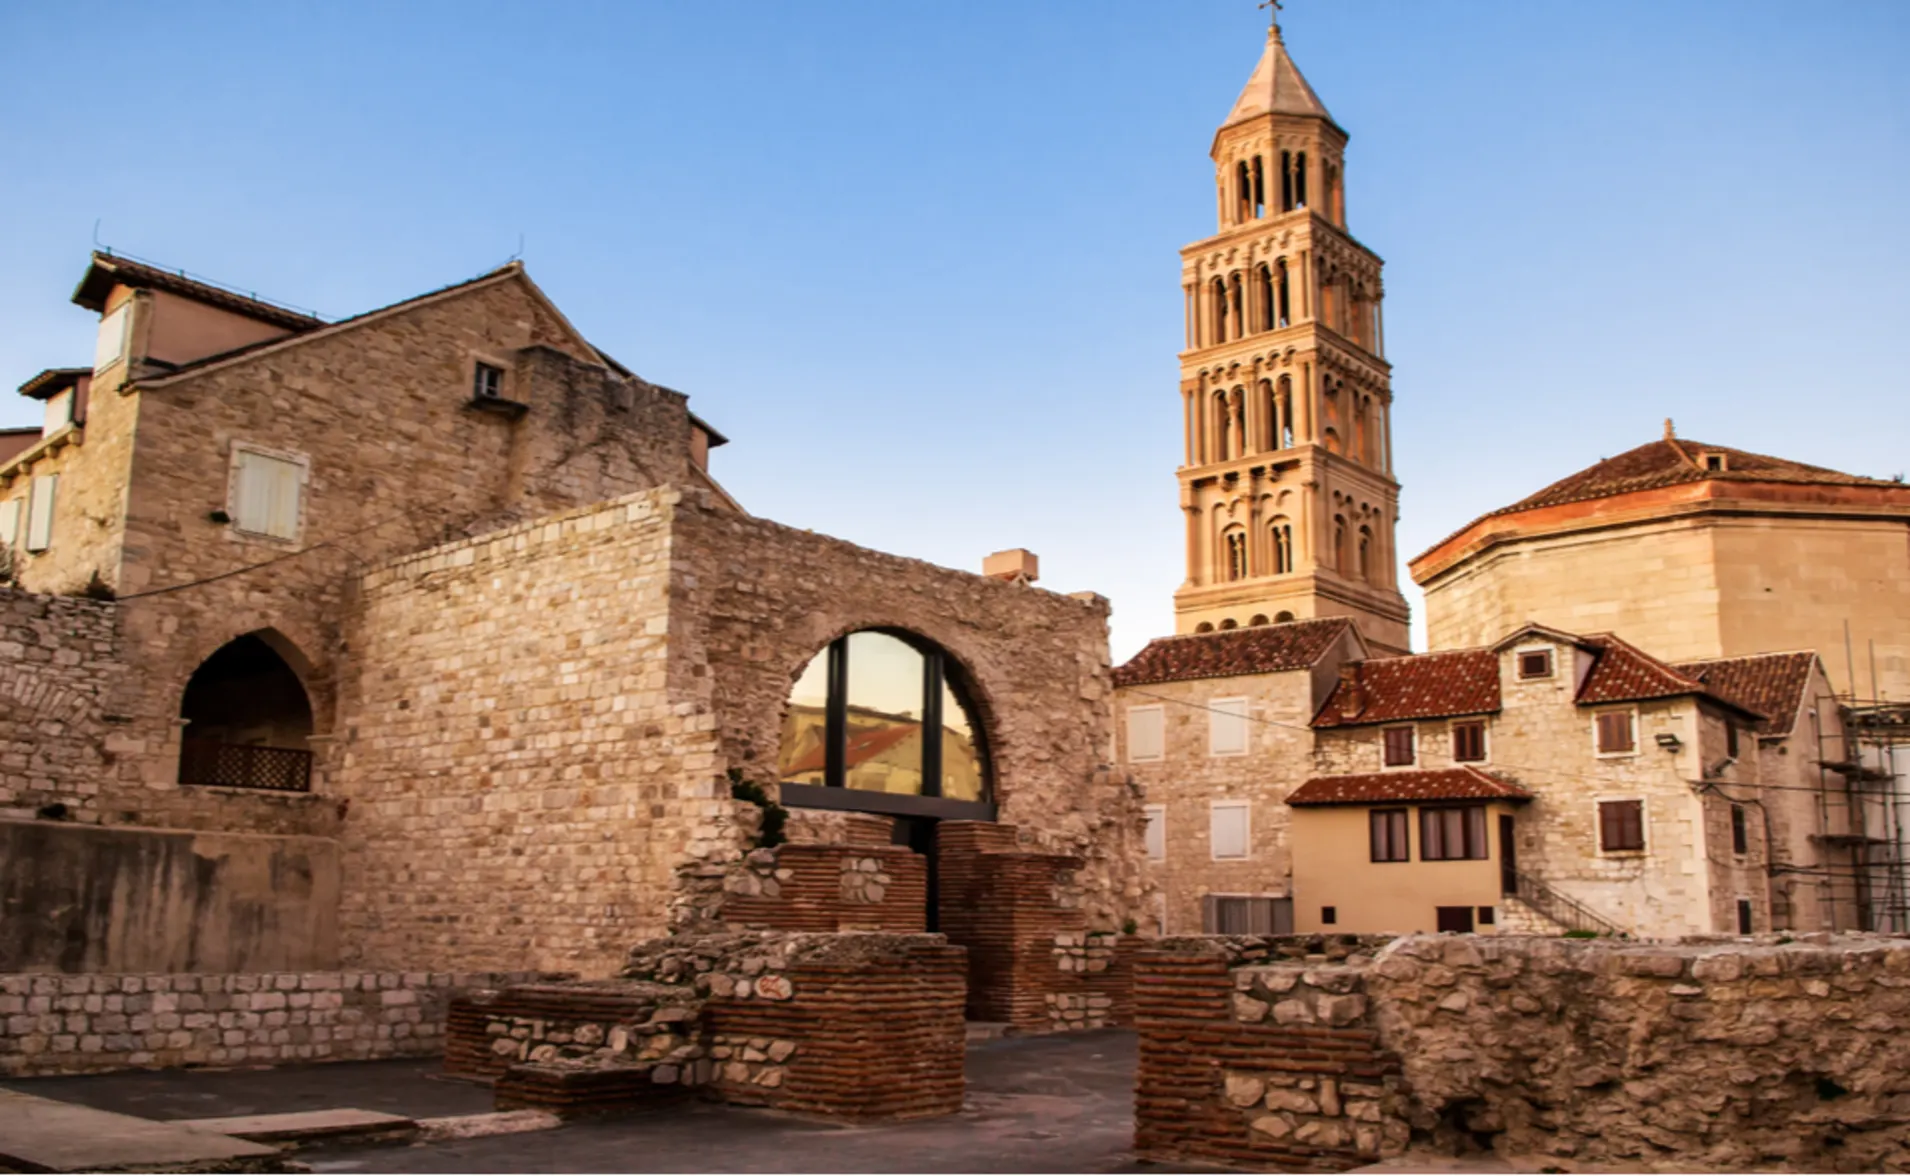 medieval walls and buildings in split croatia